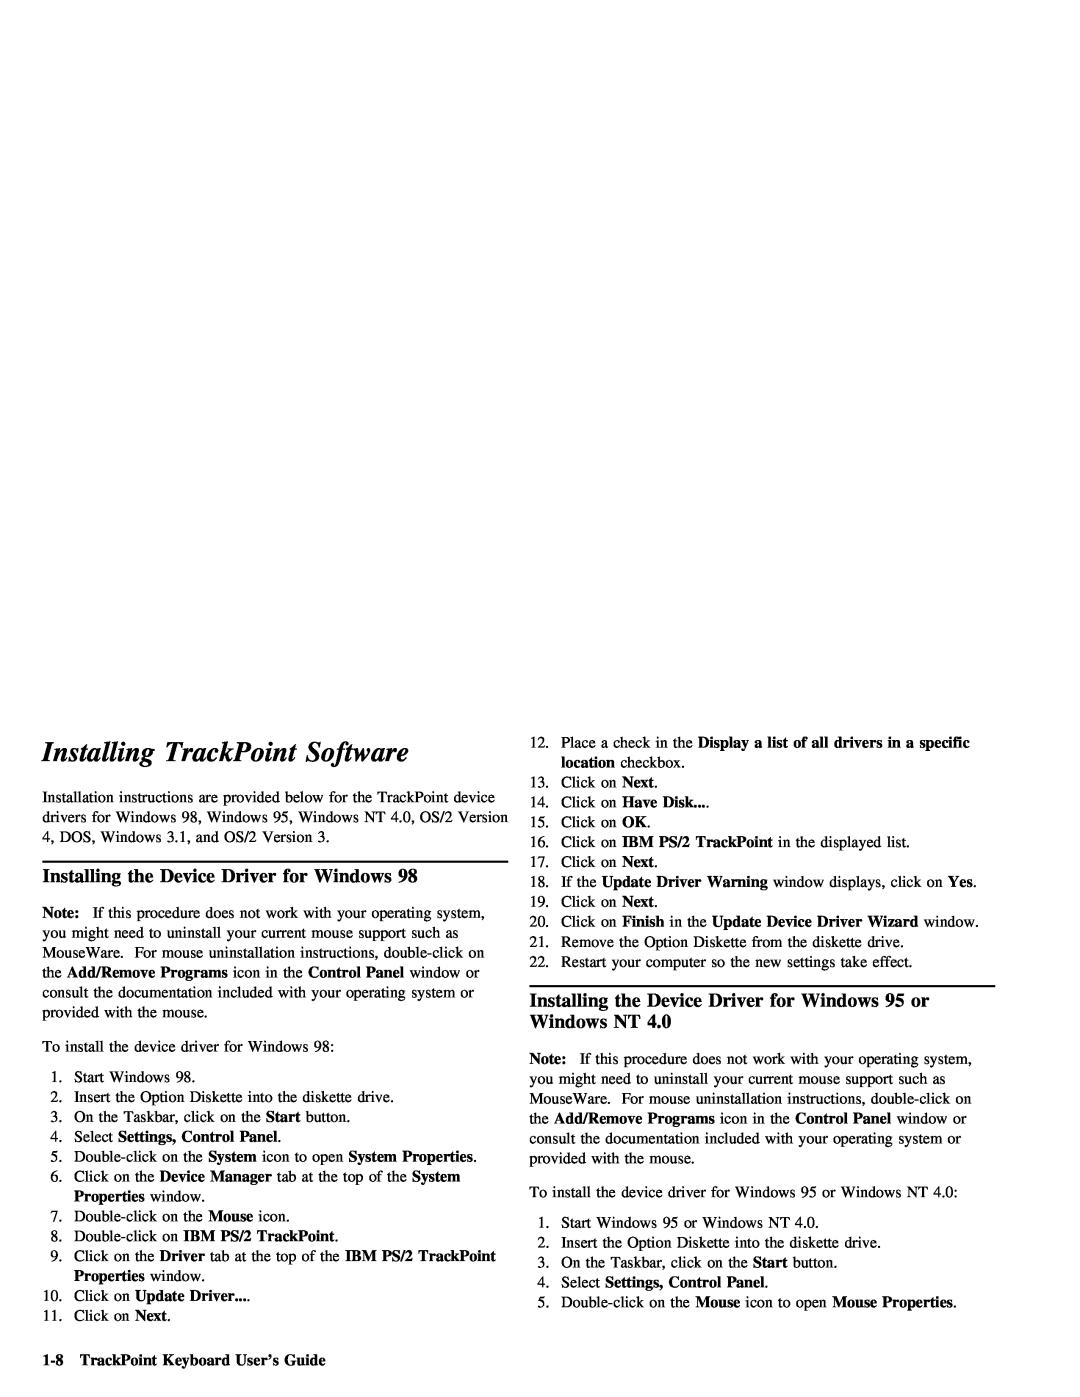 IBM Partner Pavilion TrackPoint manual Installing, Software, Driver 